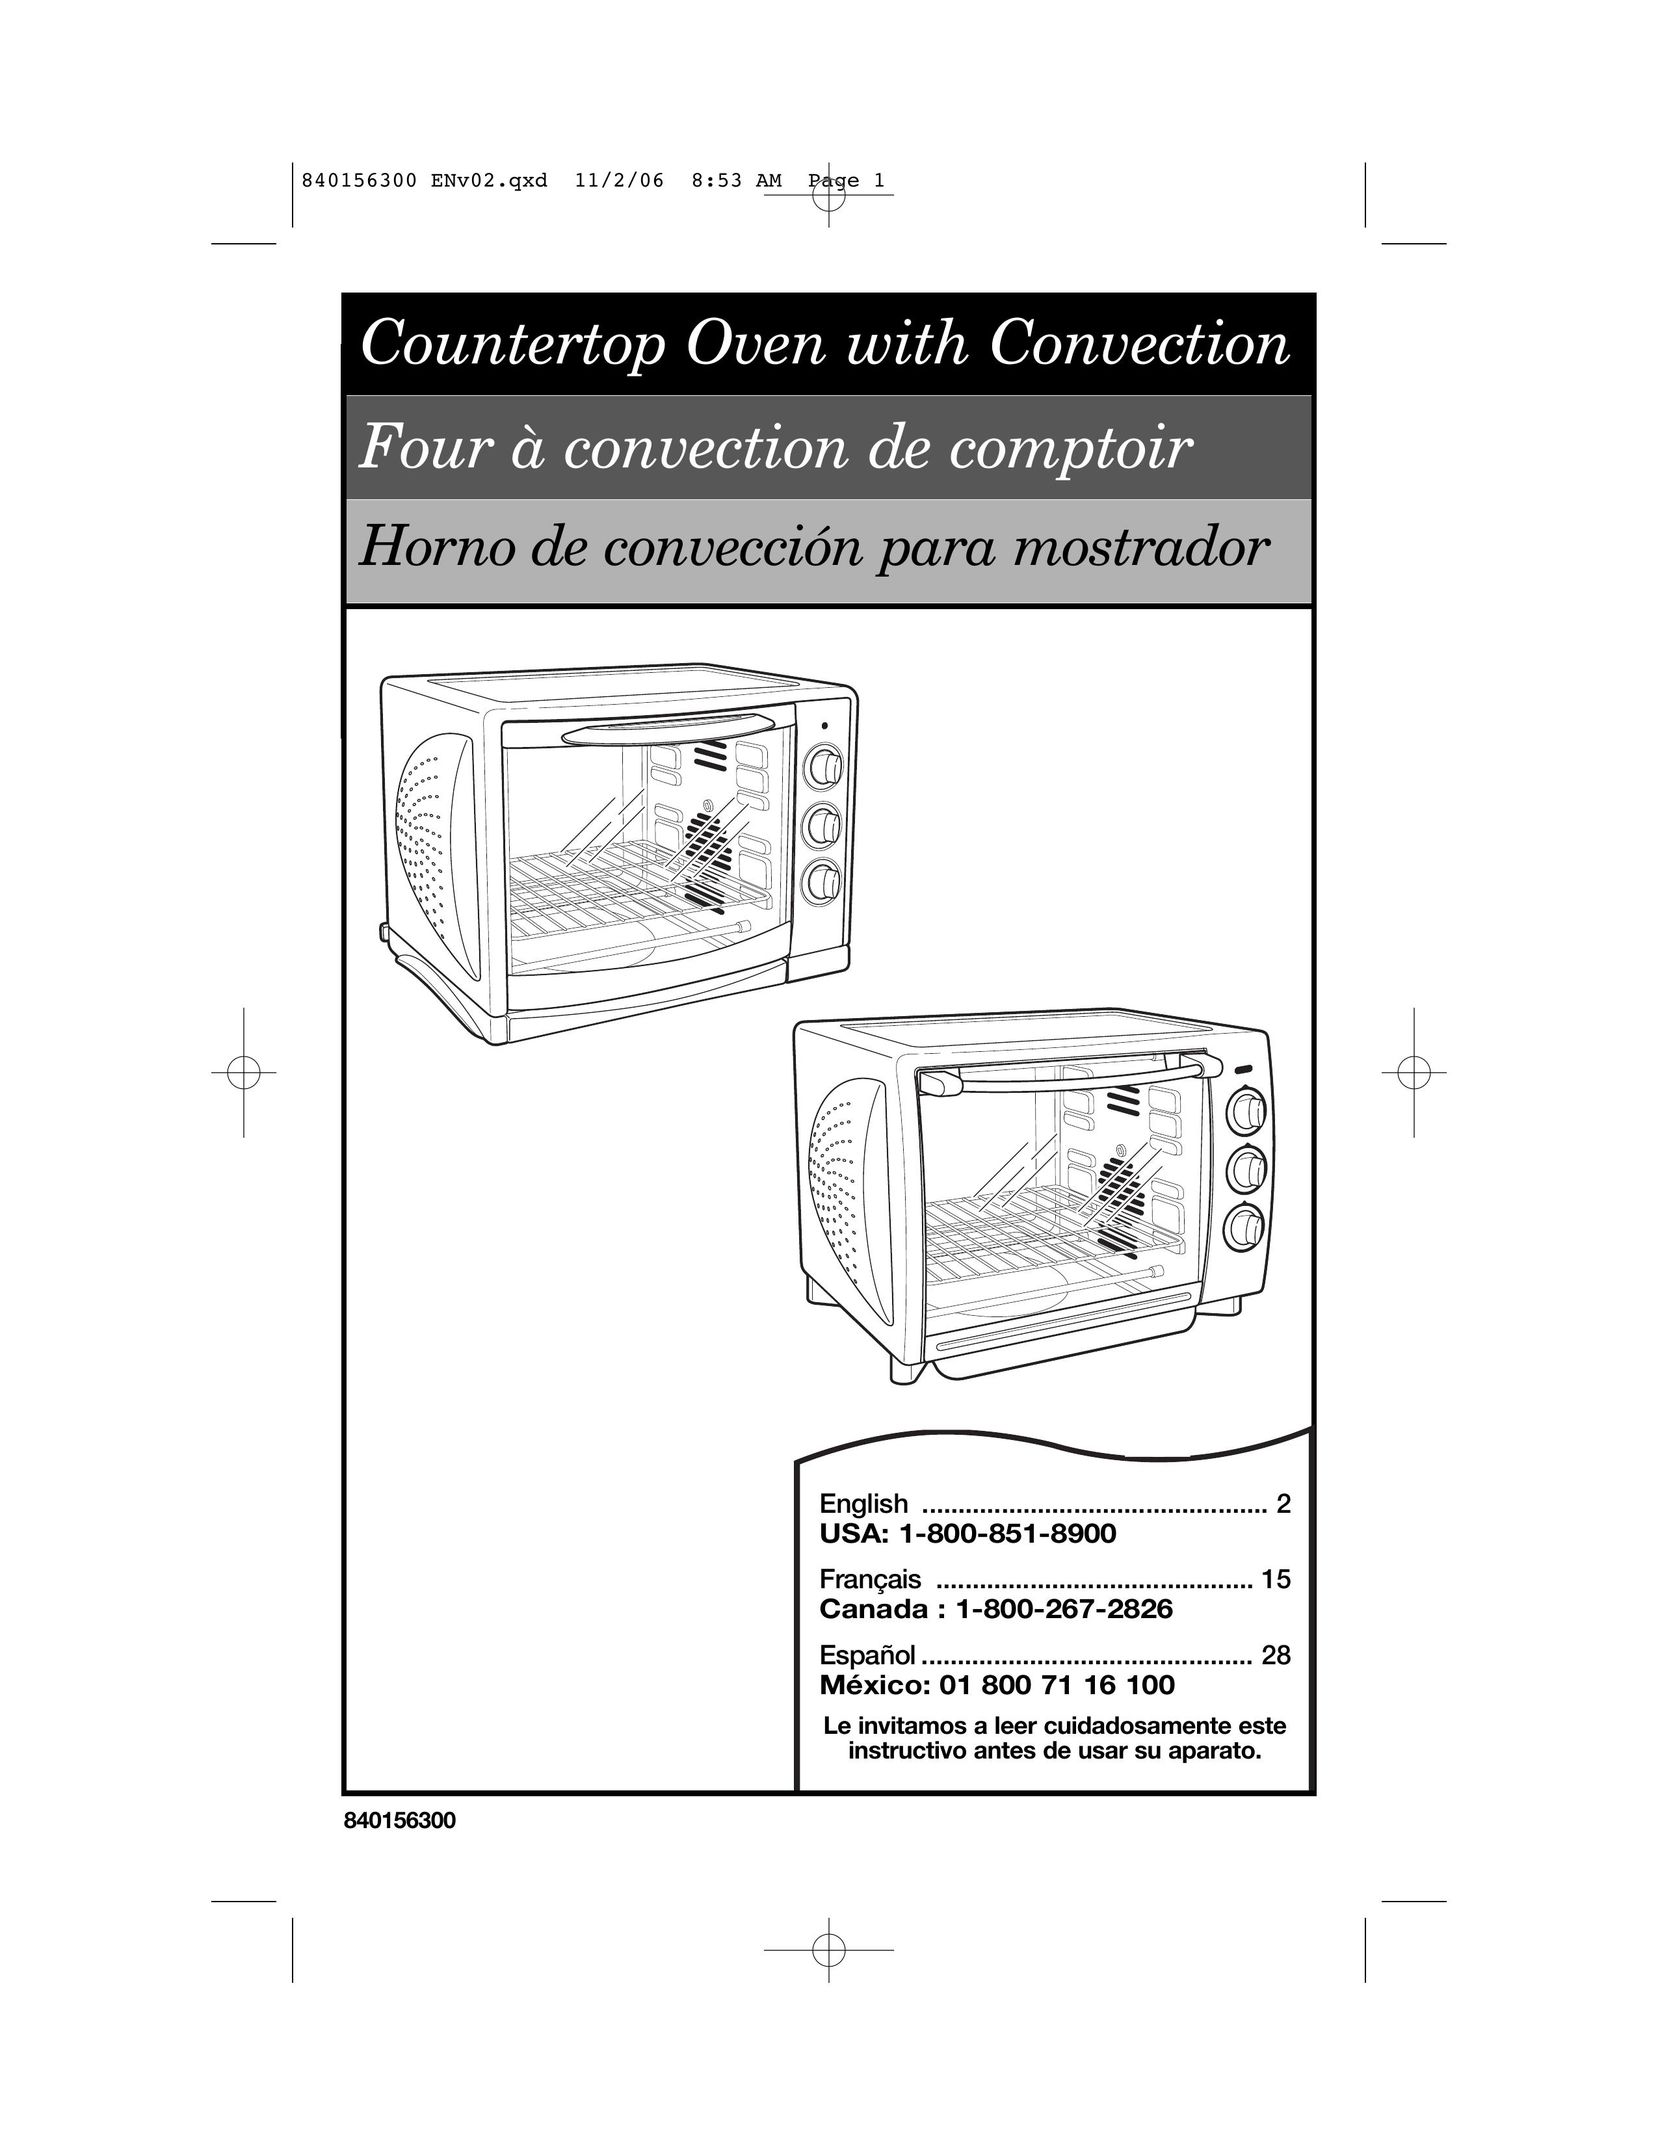 Hamilton Beach 840156300 Convection Oven User Manual